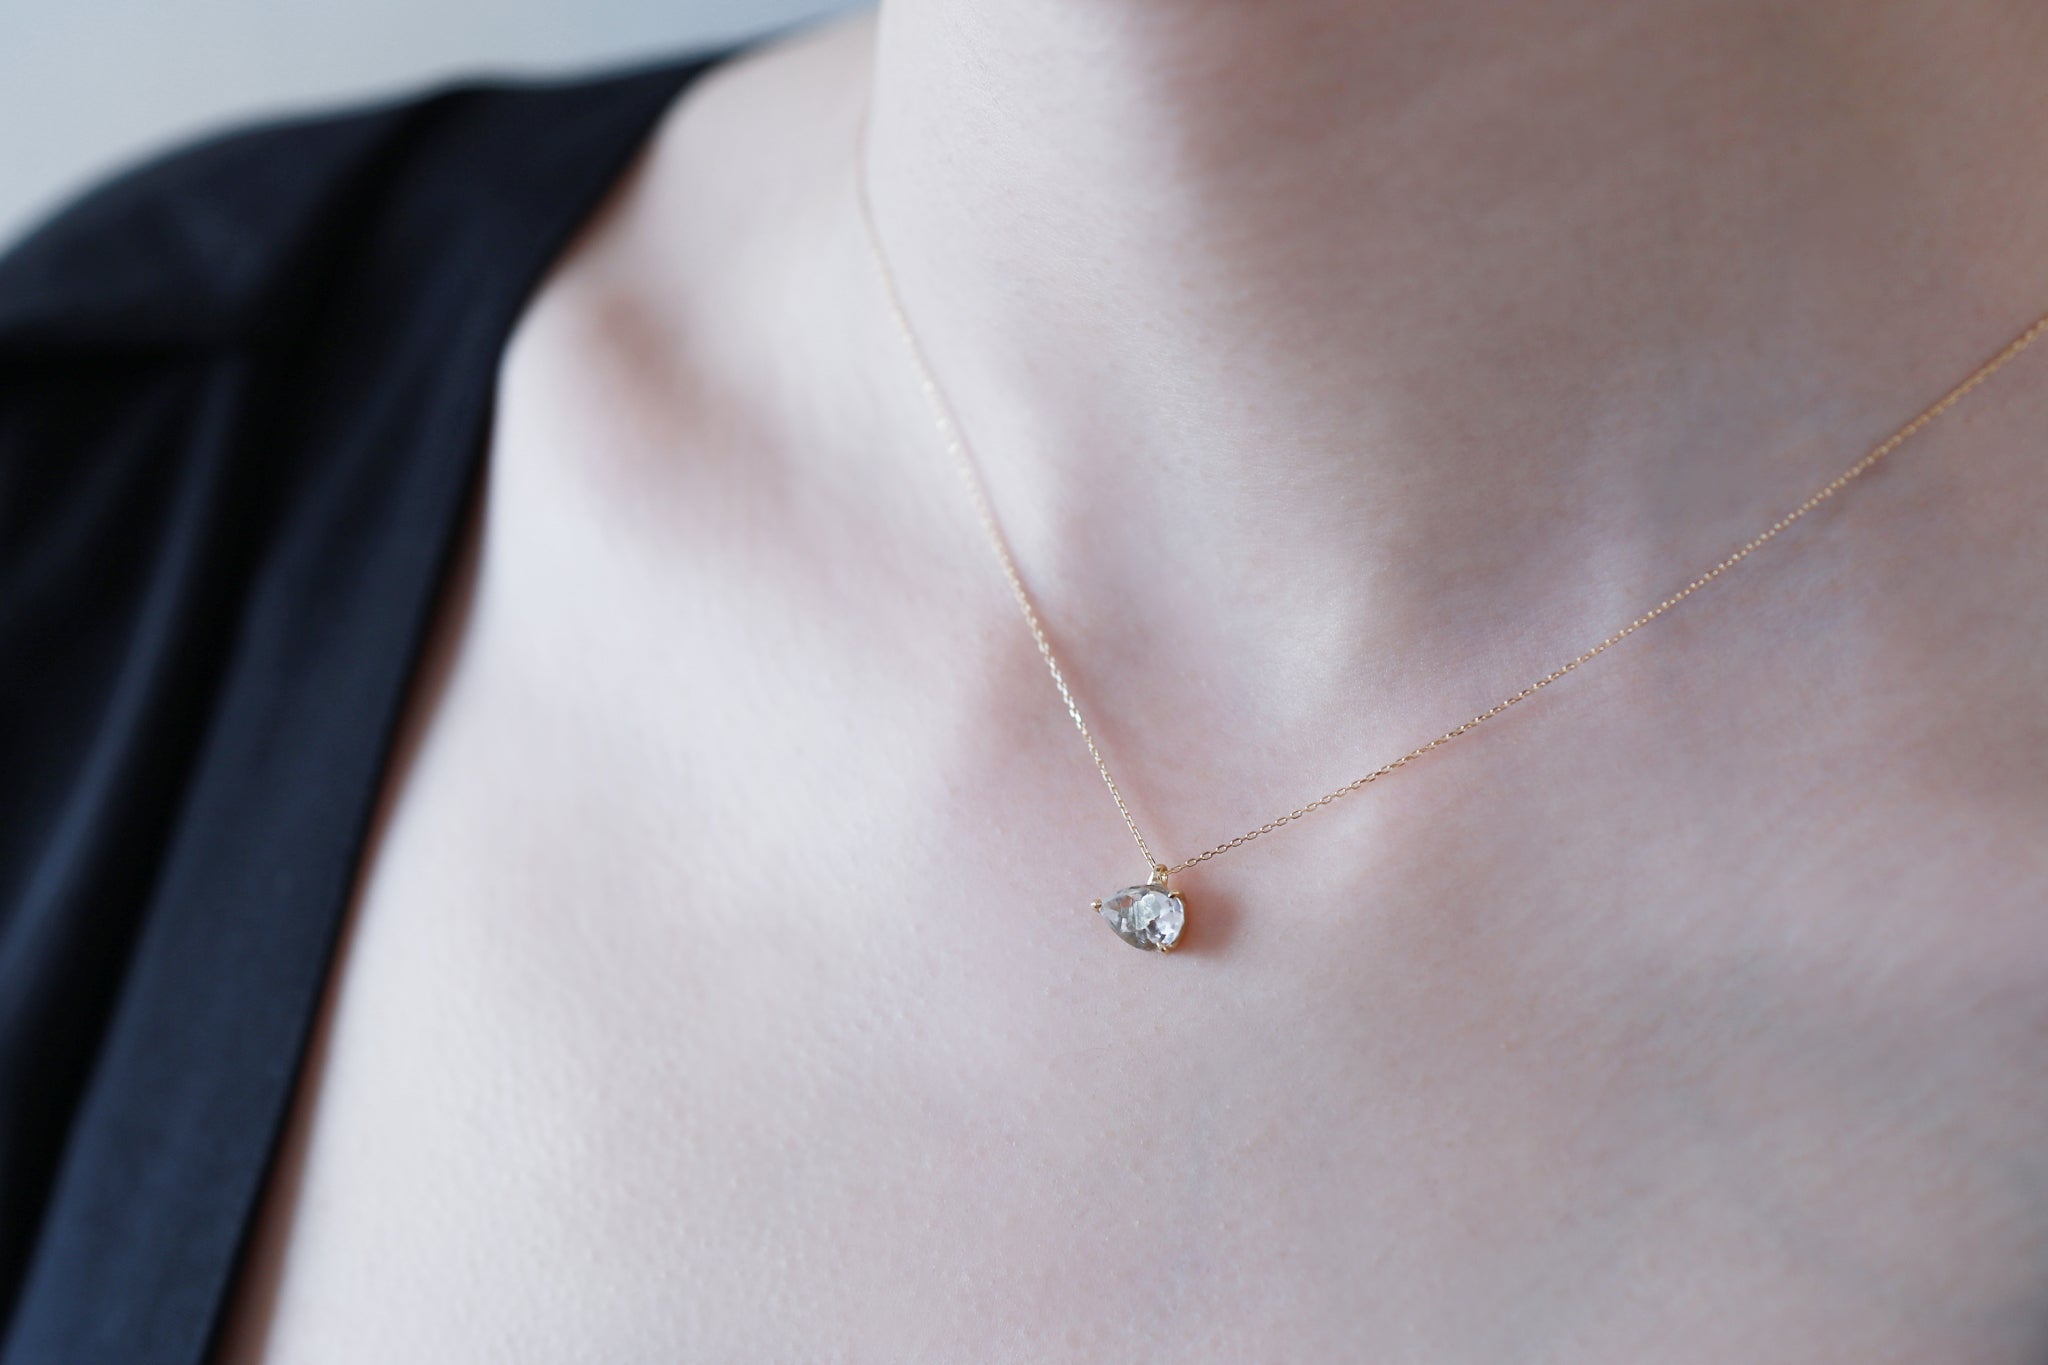 Marcasite in quartz necklace – Ryui